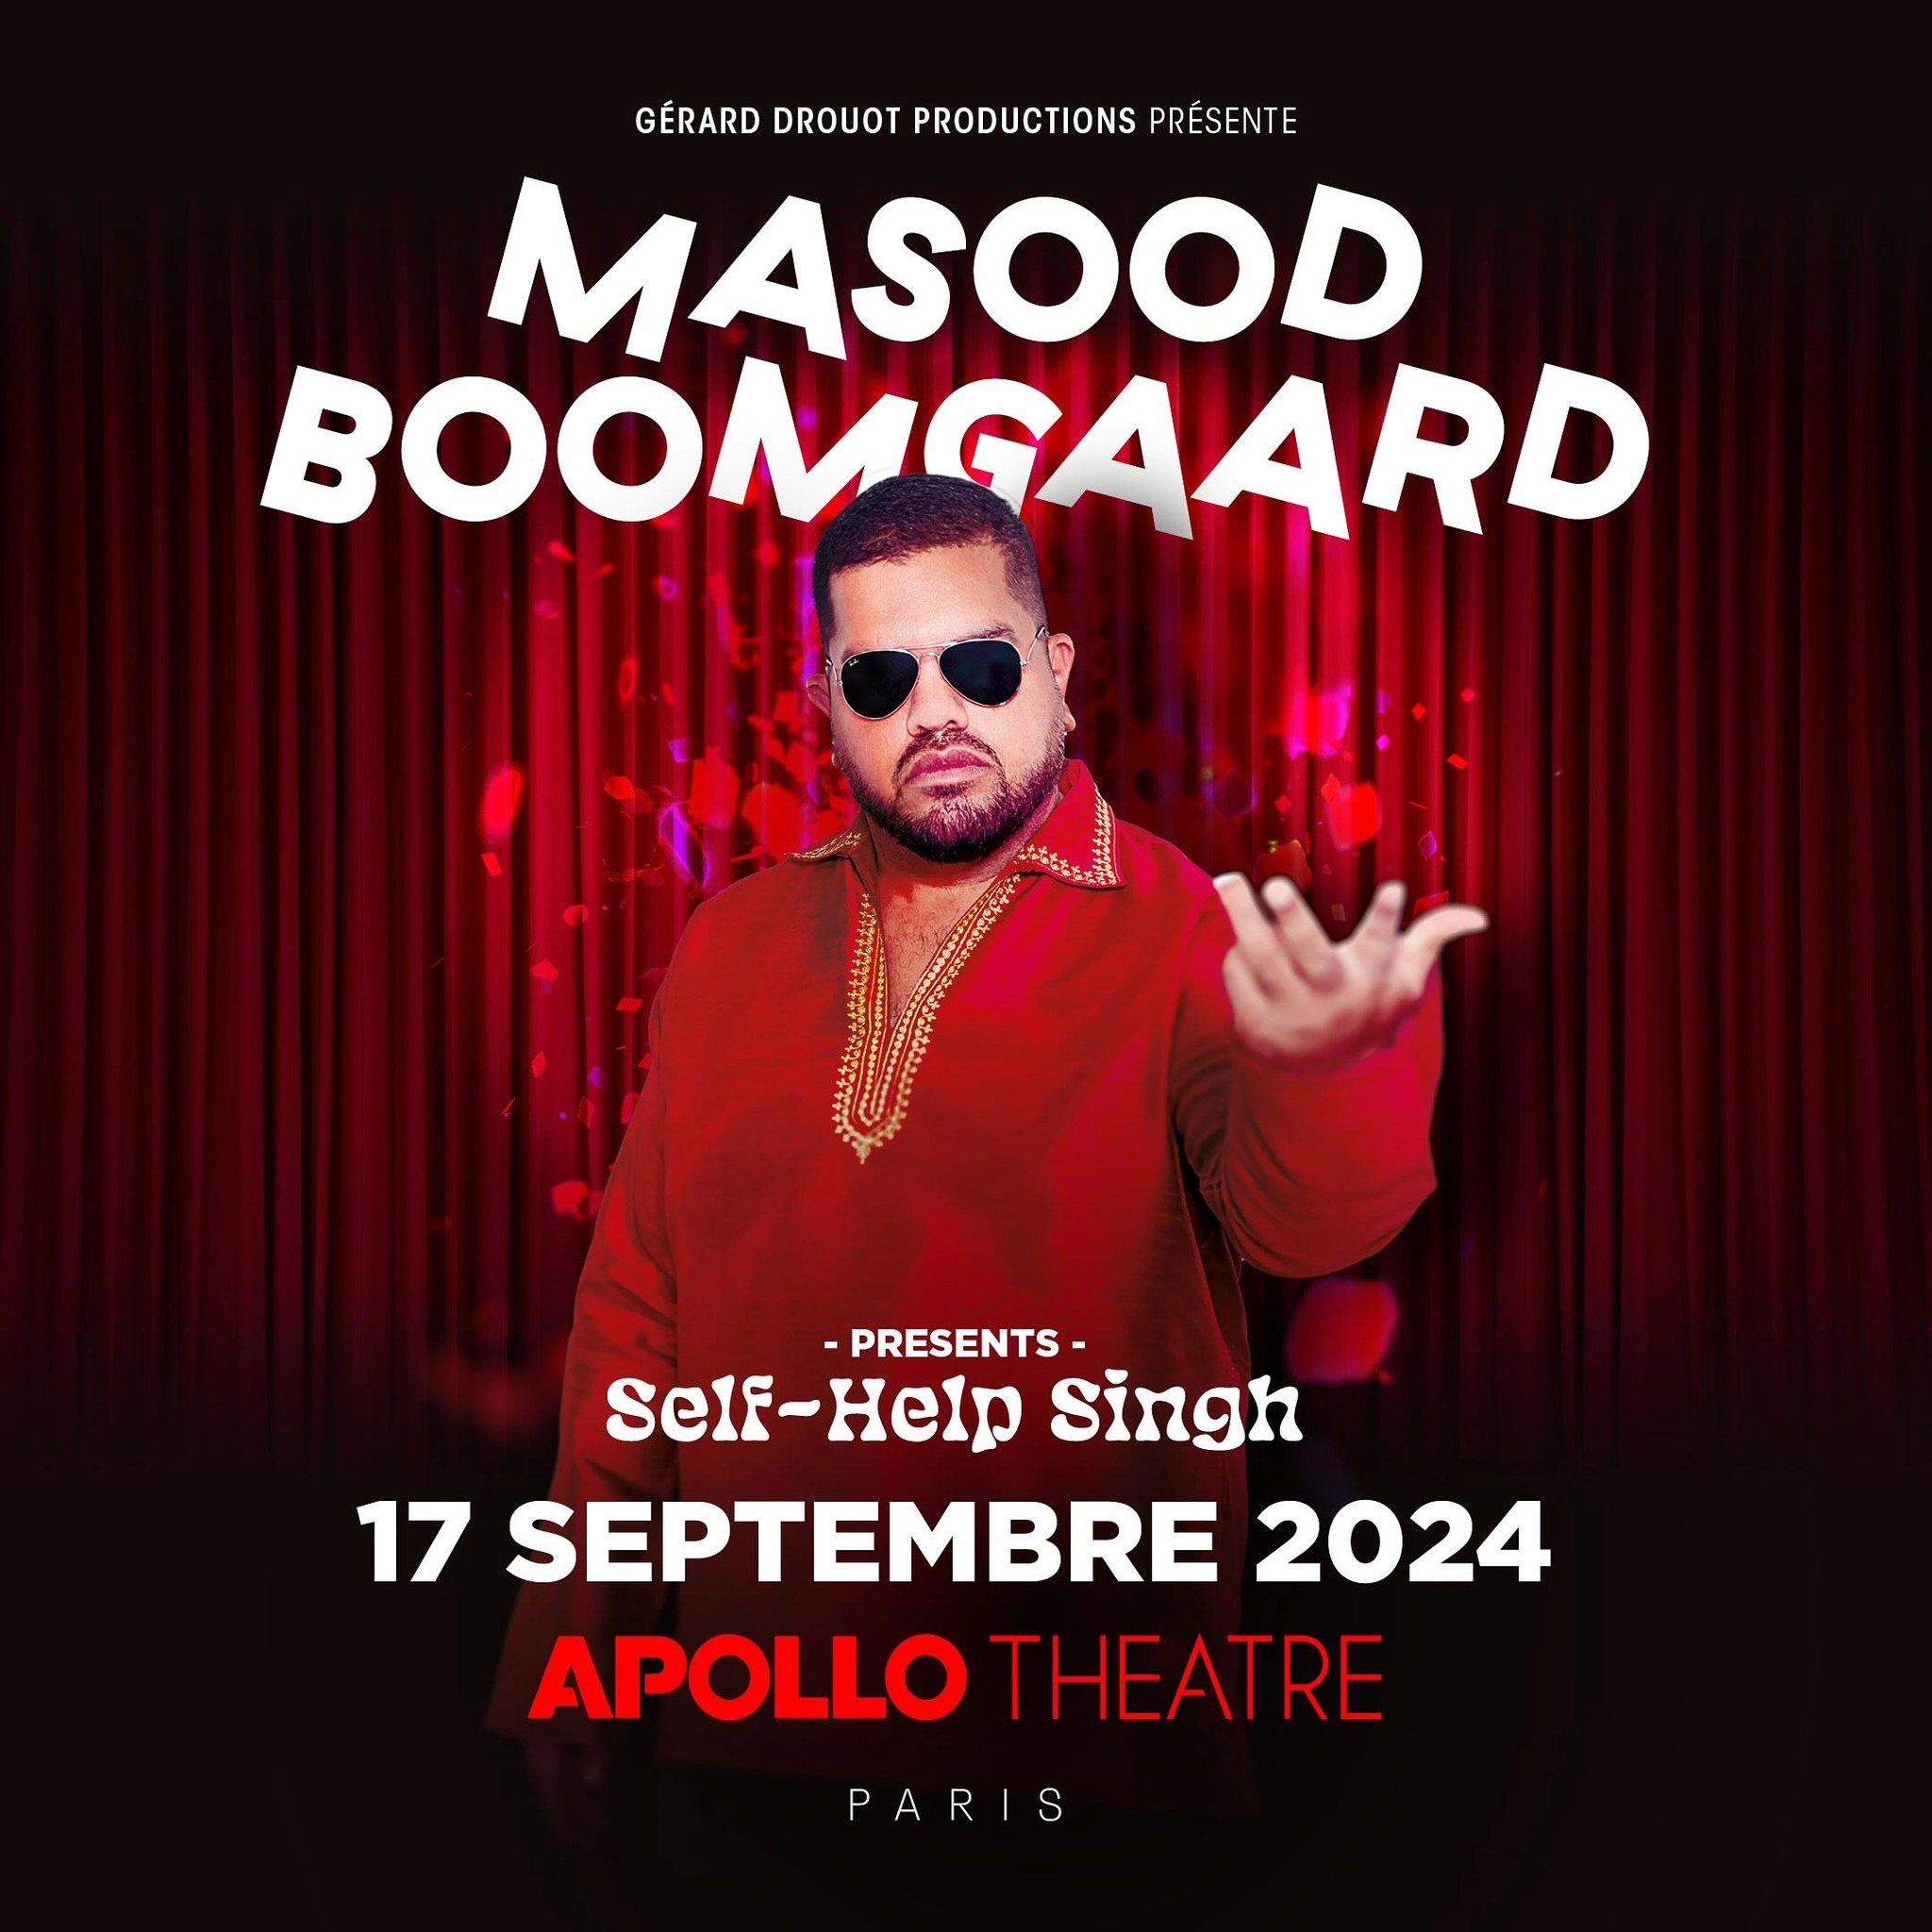 Masood Boomgaard at Apollo Theatre Tickets